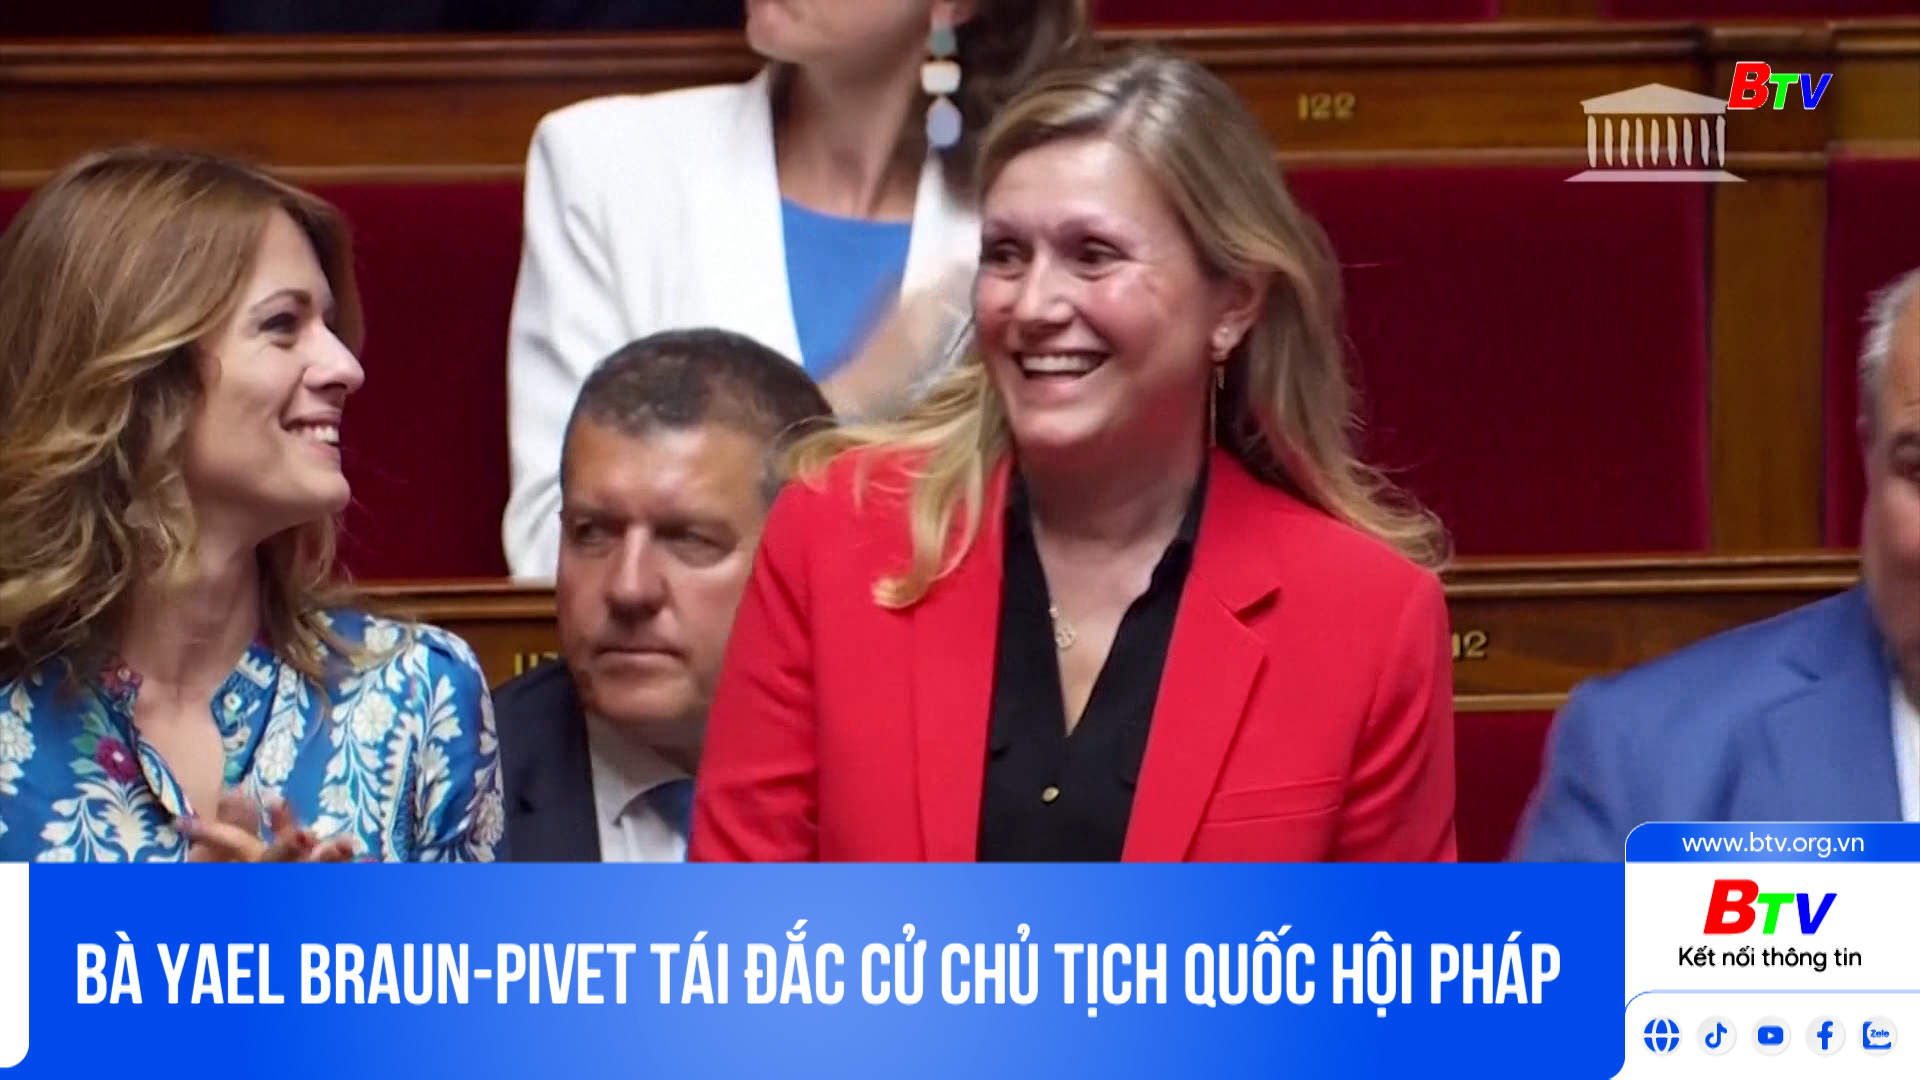 Bà Yael Braun-pivet tái đắc cử chủ tịch Quốc hội Pháp